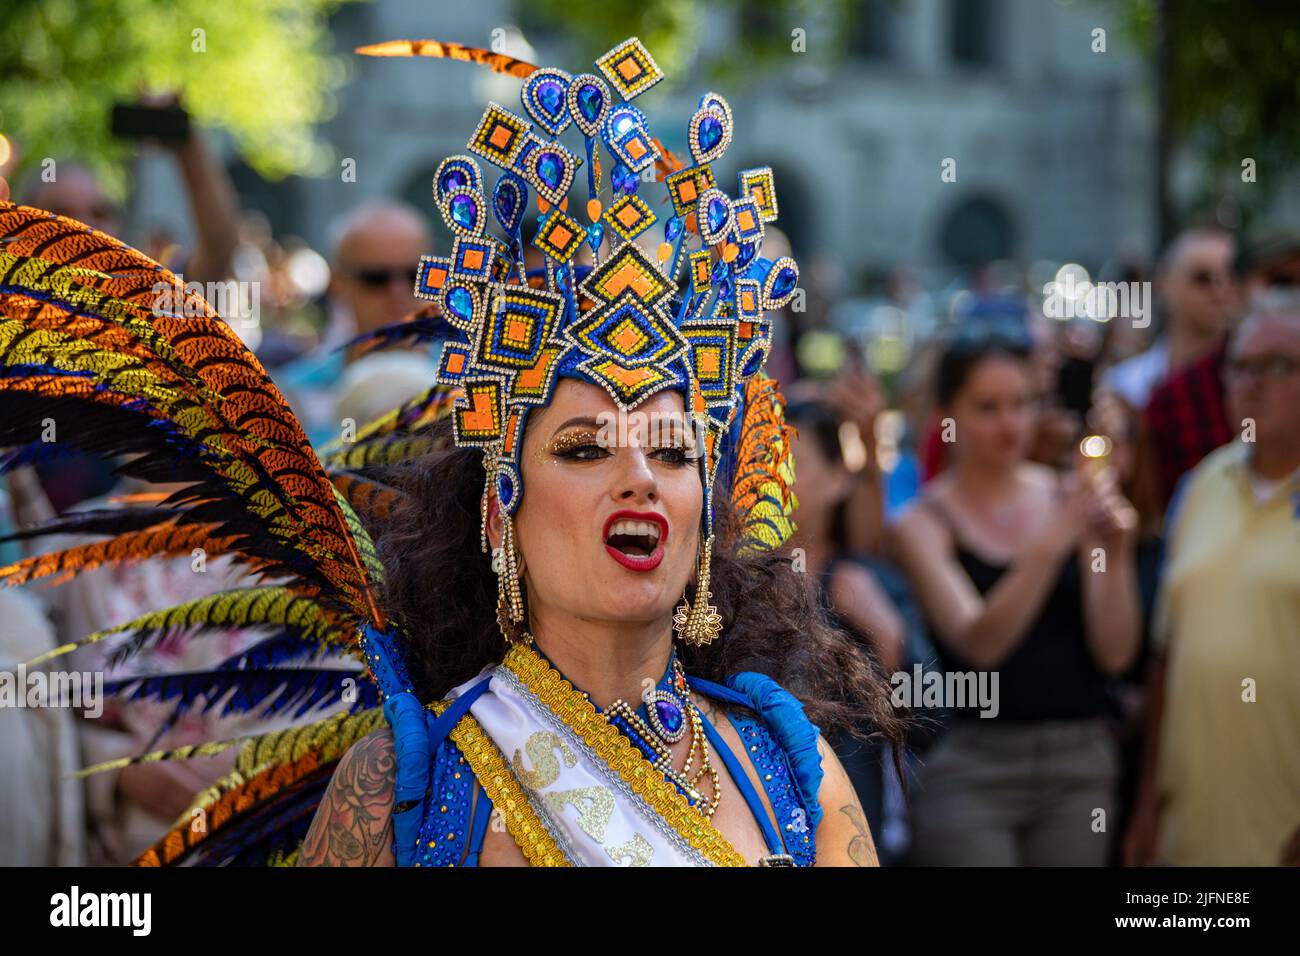 Weibliche Darstellerin in extravaganter Tracht bei der Samba Carnaval Parade in Pohjoisesplanadi, Helsinki, Finnland Stockfoto